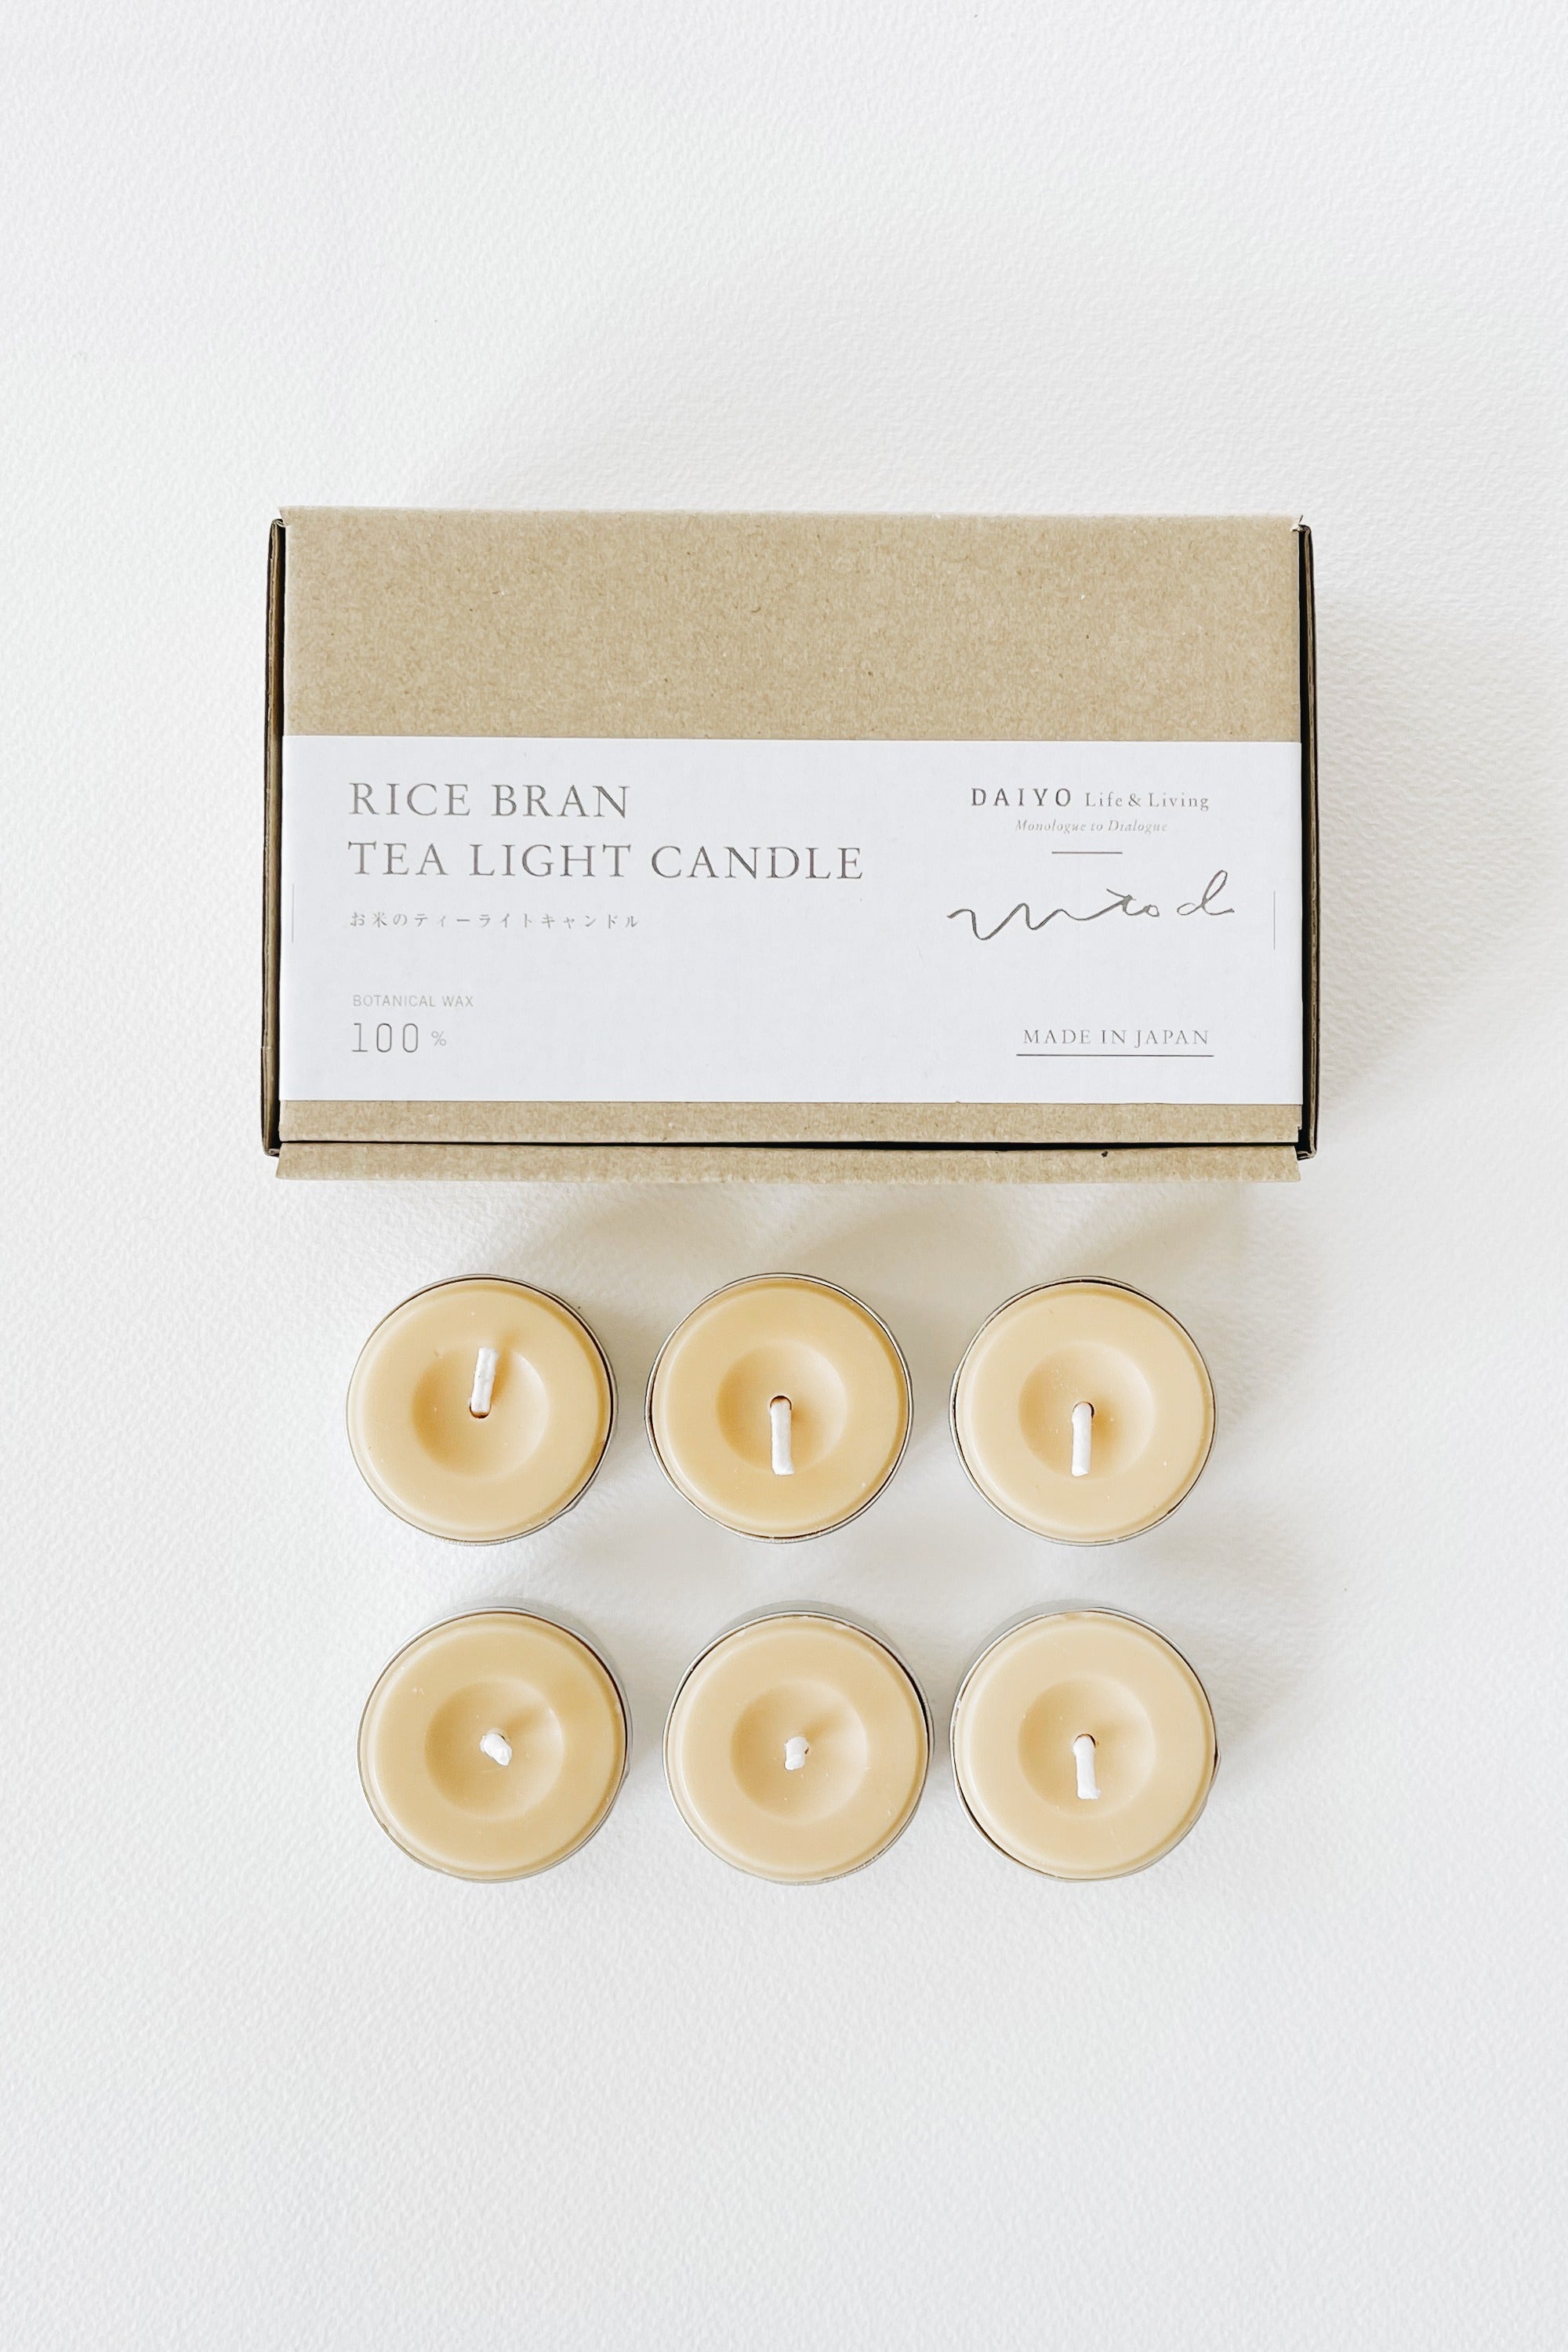 Daiyo Rice Bran Tealight Candles - 6 Pack